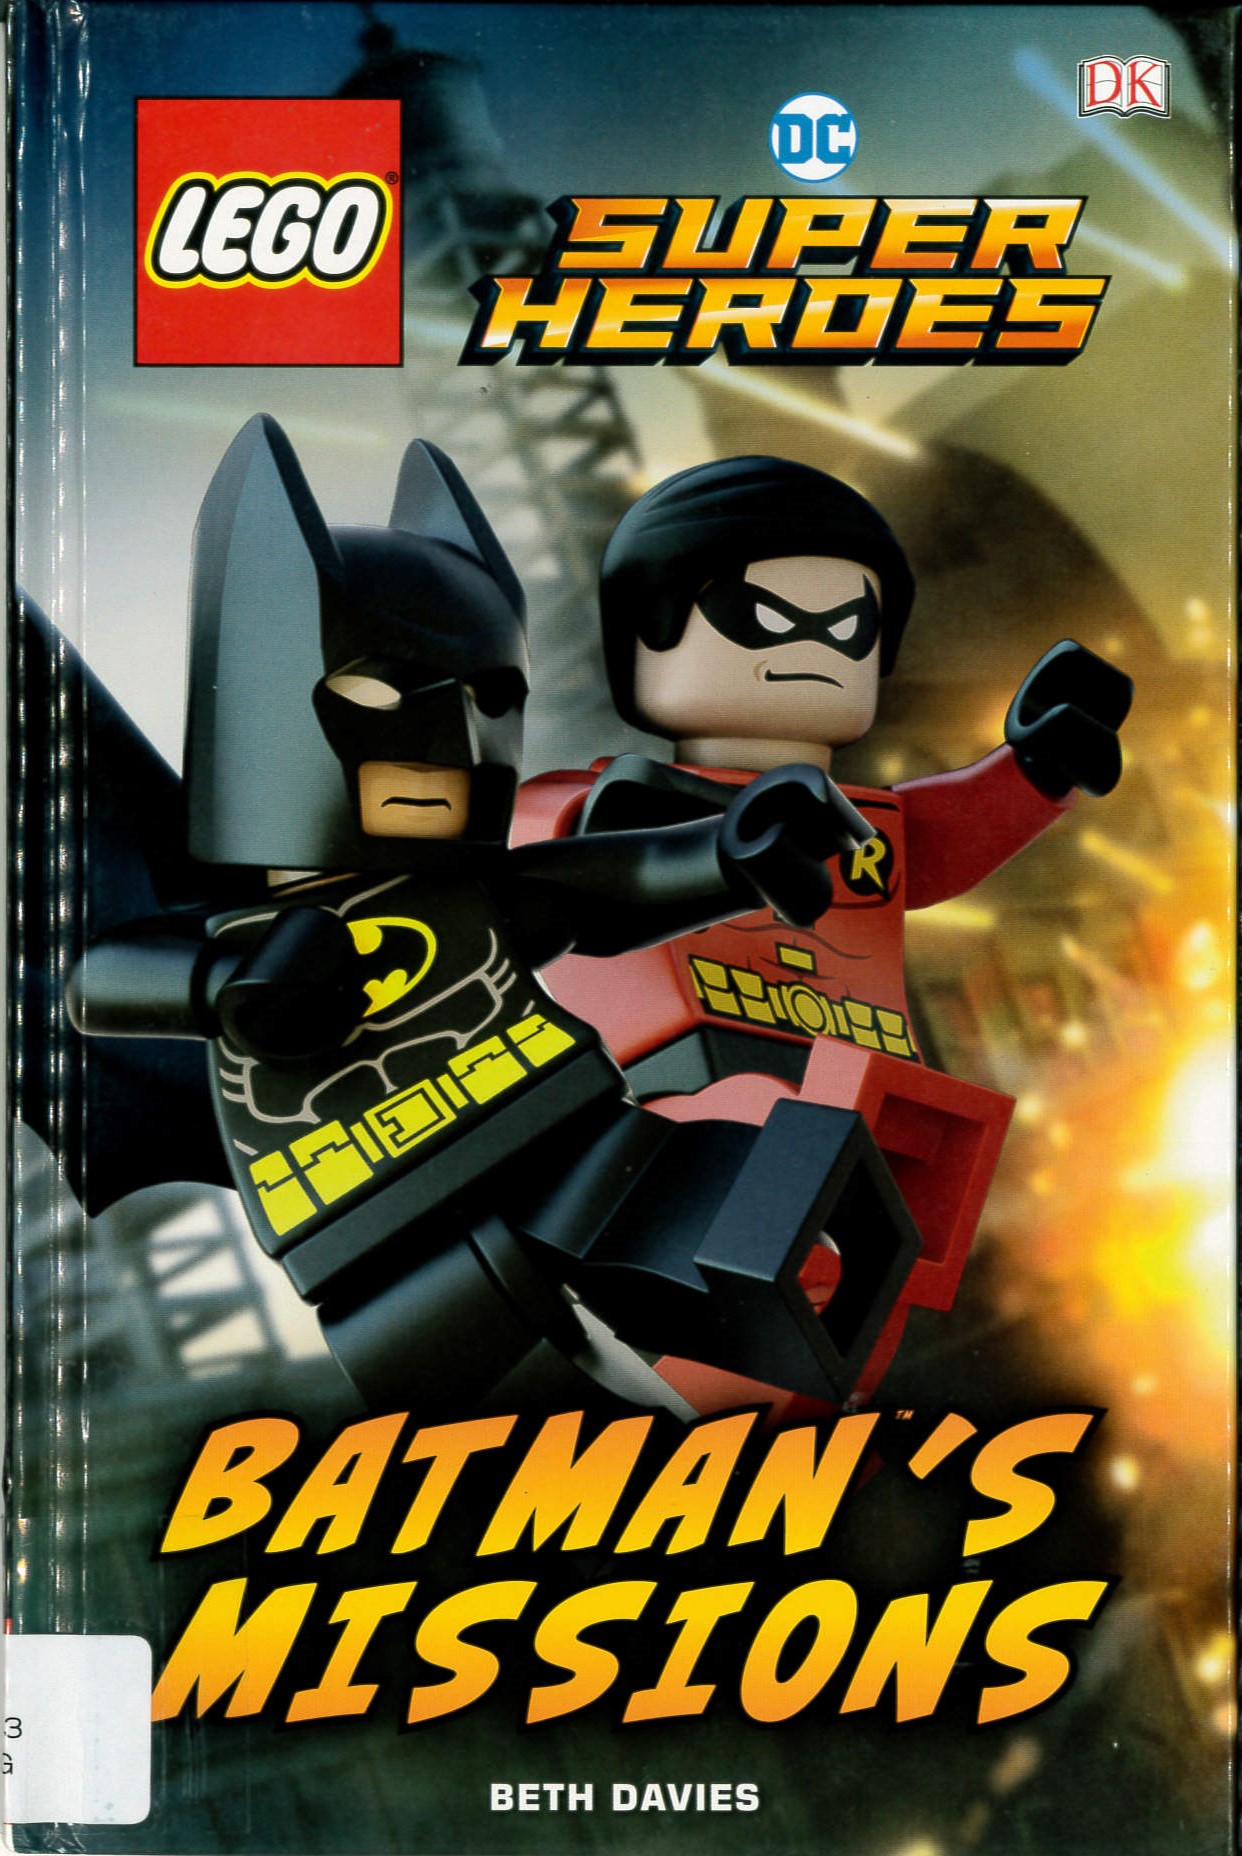 LEGO DC super heroes: Batman